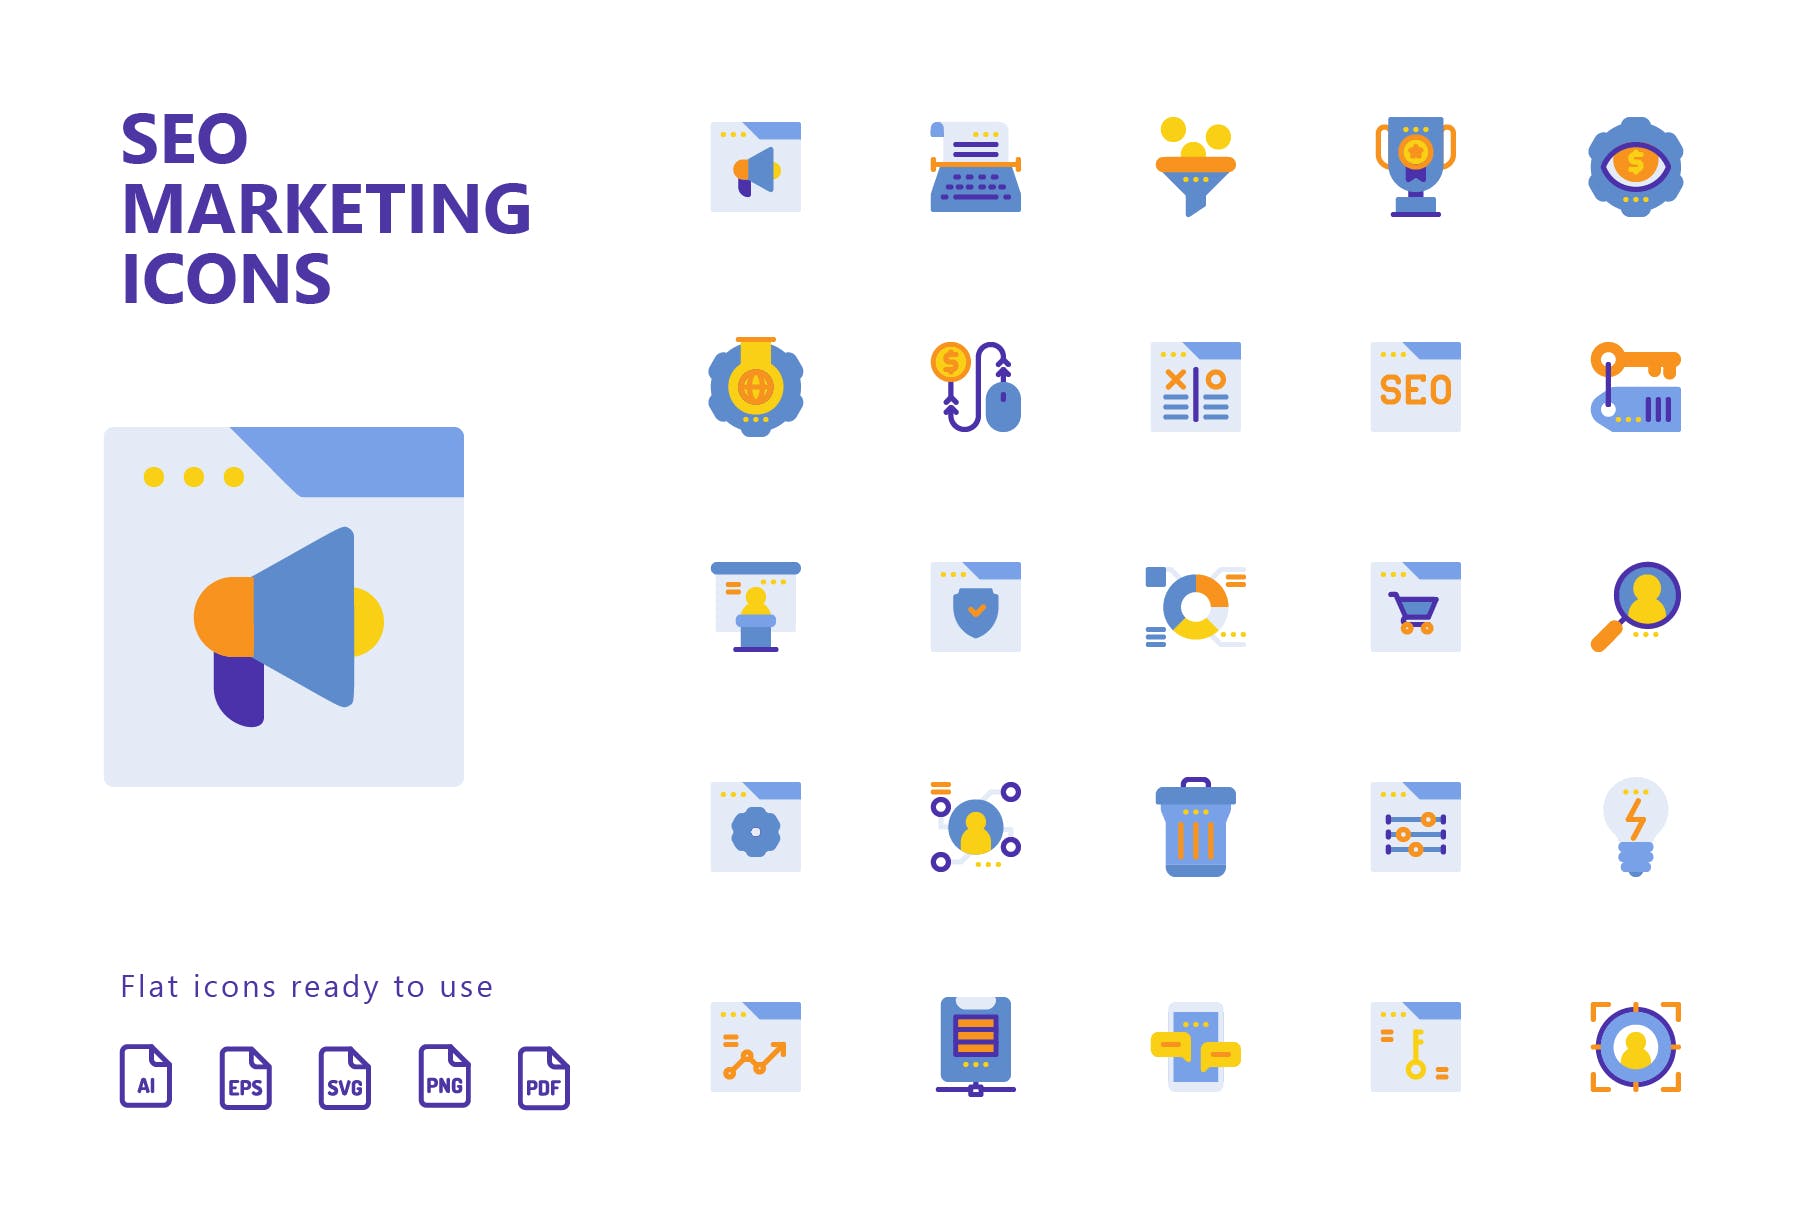 25枚SEO搜索引擎优化营销扁平化矢量素材库精选图标v2 SEO Marketing Flat Icons插图(1)